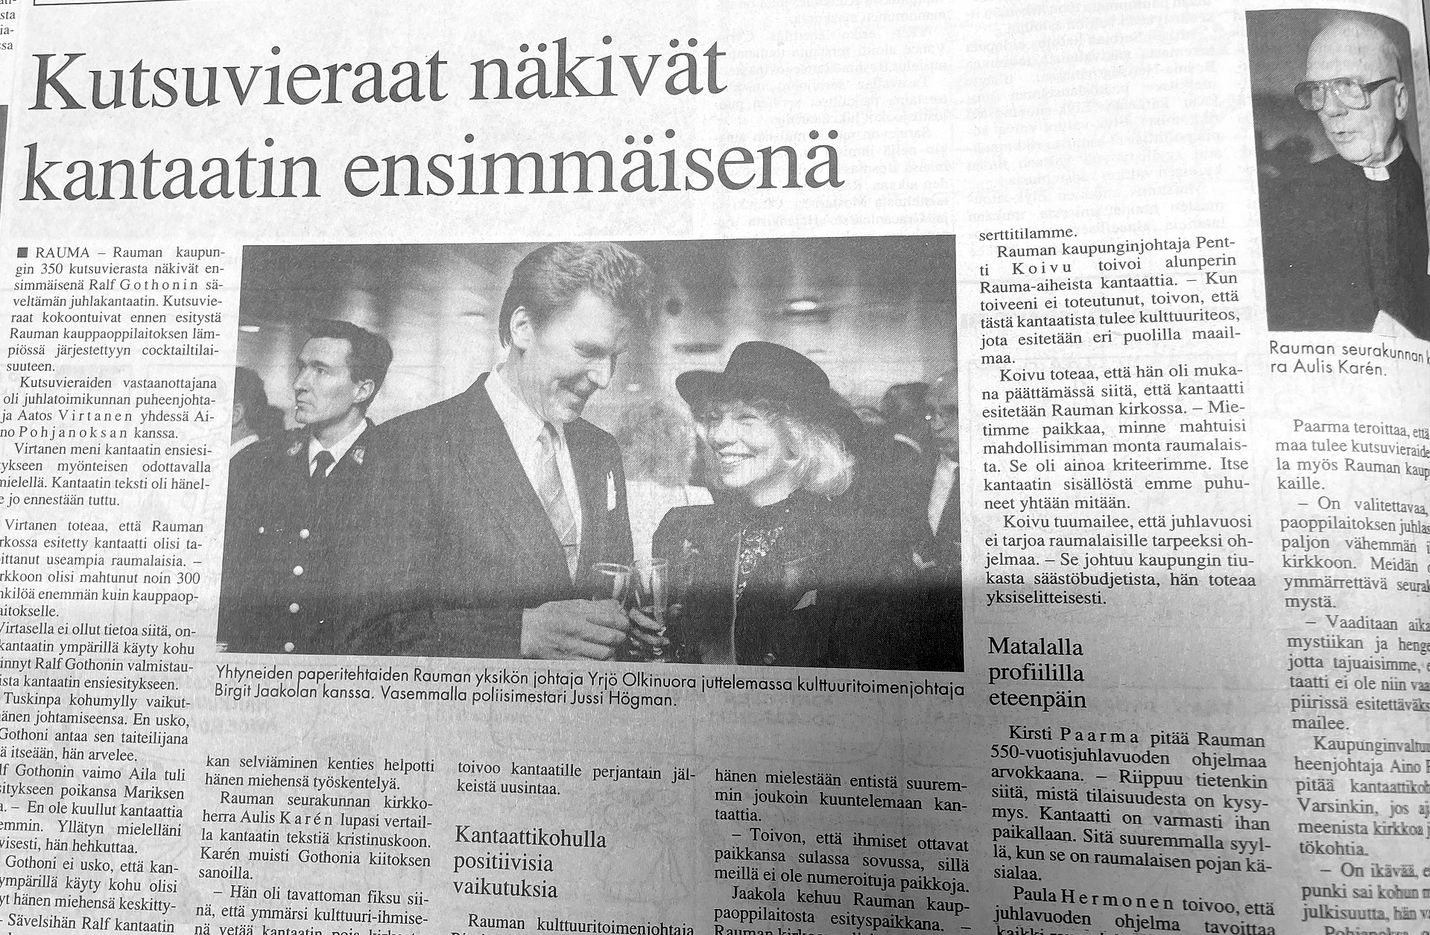 Säveltäjä, pianisti  ja kapellimestari Ralf        Gothonilta vuodeksi 1992 tilattu kantaatti sai ensiesityksensä Rauma-päivän vastaanotolla Rauma-salissa.    Alun perin kantaatti oli tarkoitus esittää Pyhän Ristin kirkossa, mutta se ei käynyt seurakunnalle.